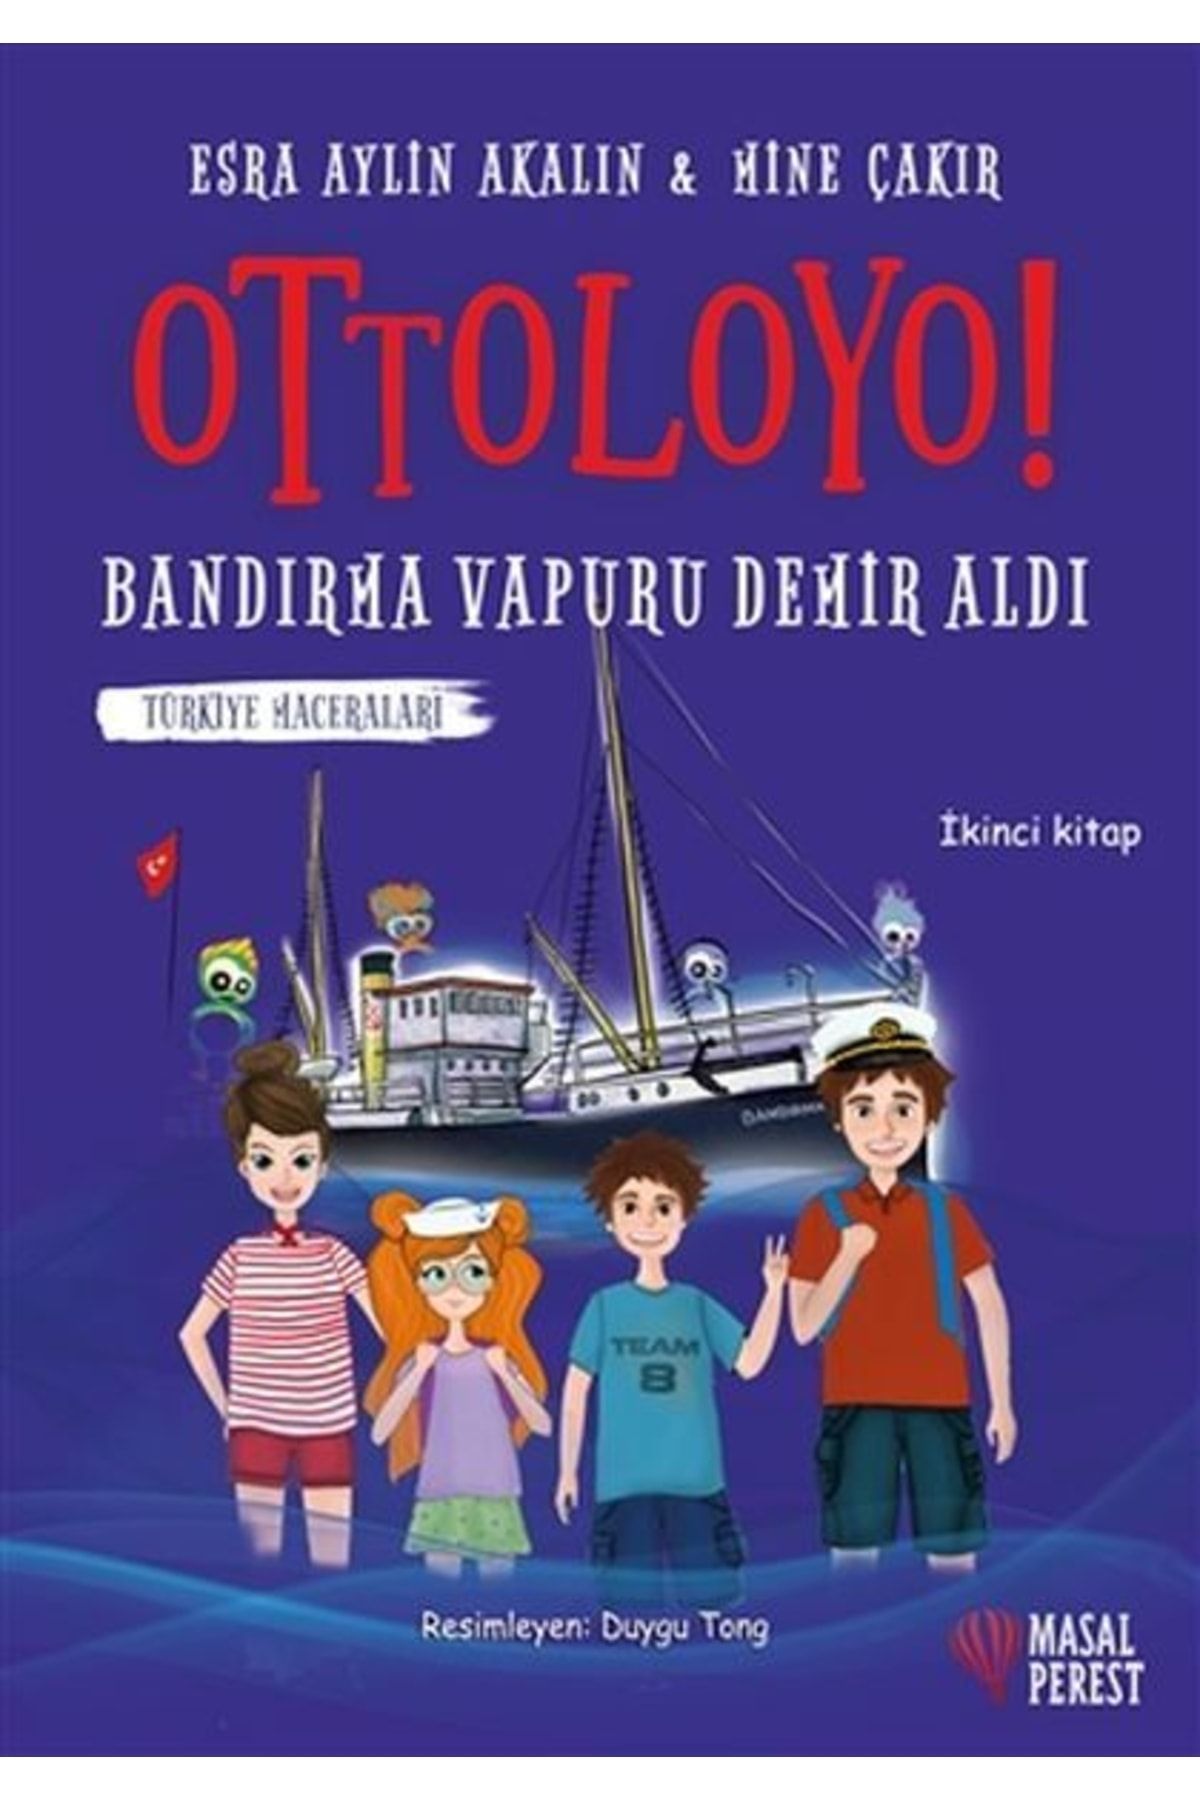 Kollektif Ottoloyo - Bandırma Vapuru Demir Aldı - Ikinci Kitap